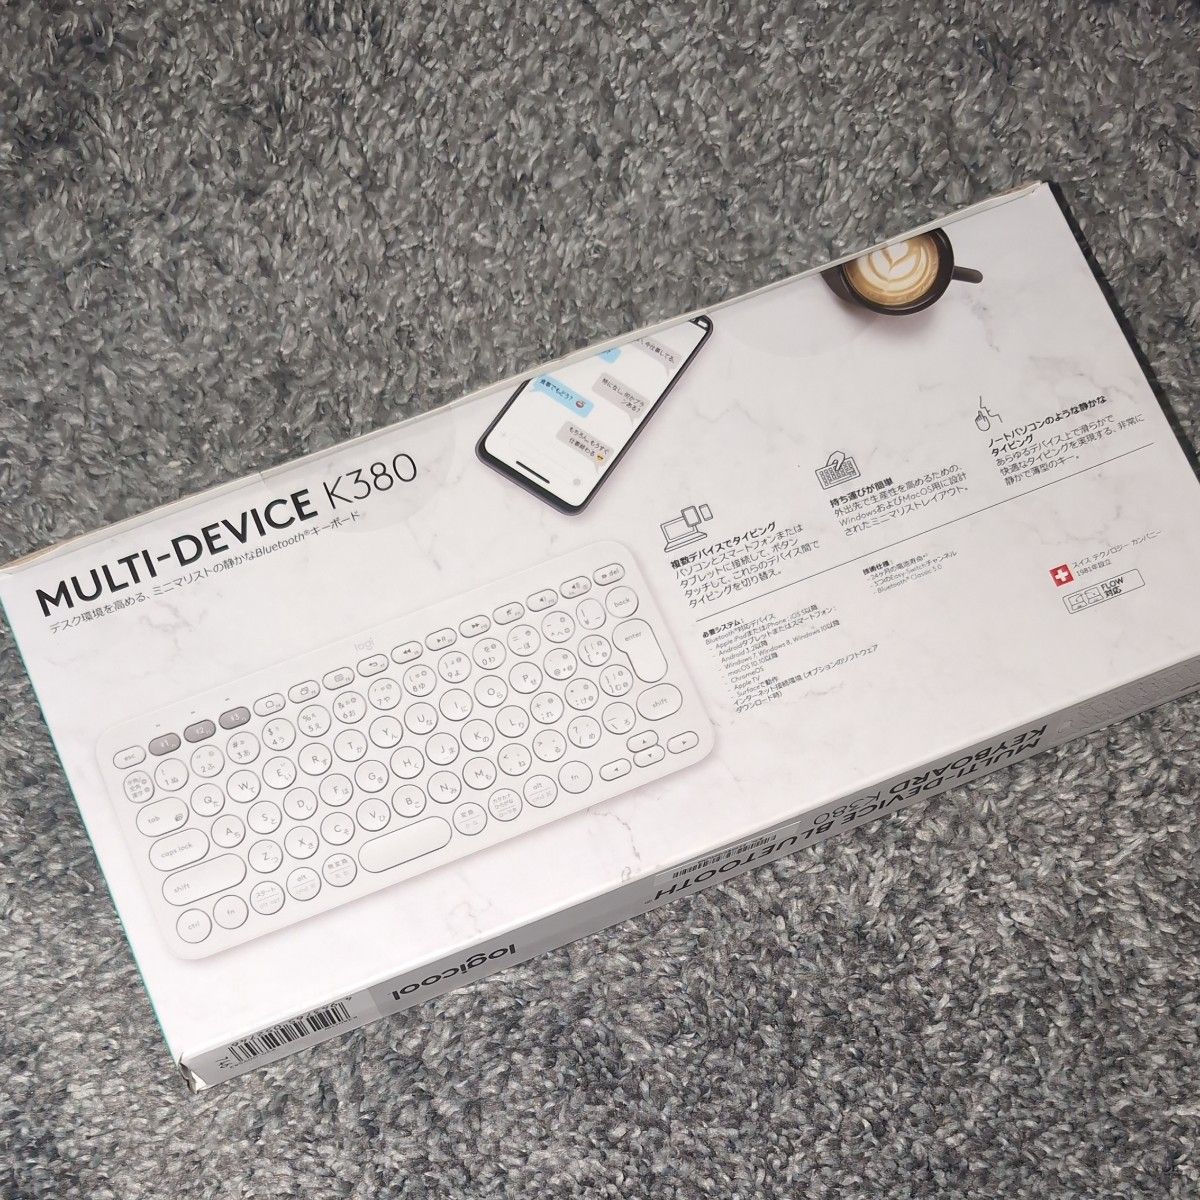 ※新品未開封品※ ロジクール K380 マルチデバイス Bluetoothキーボード (オフホワイト)